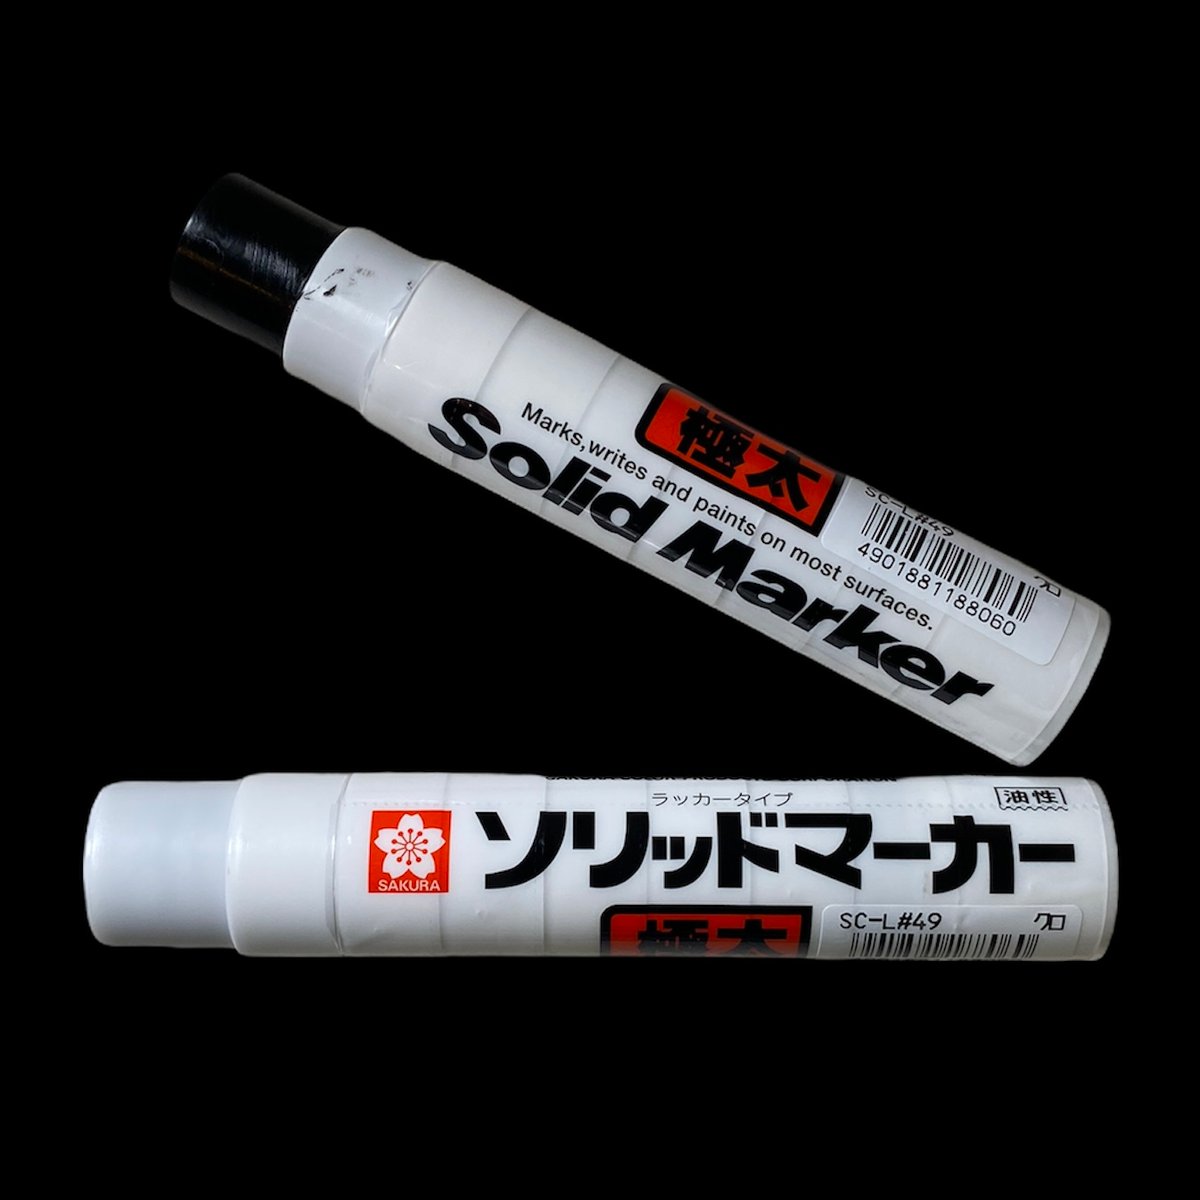 Sakura Solid Split Marker - 8 way Color Splits (Split Streaker